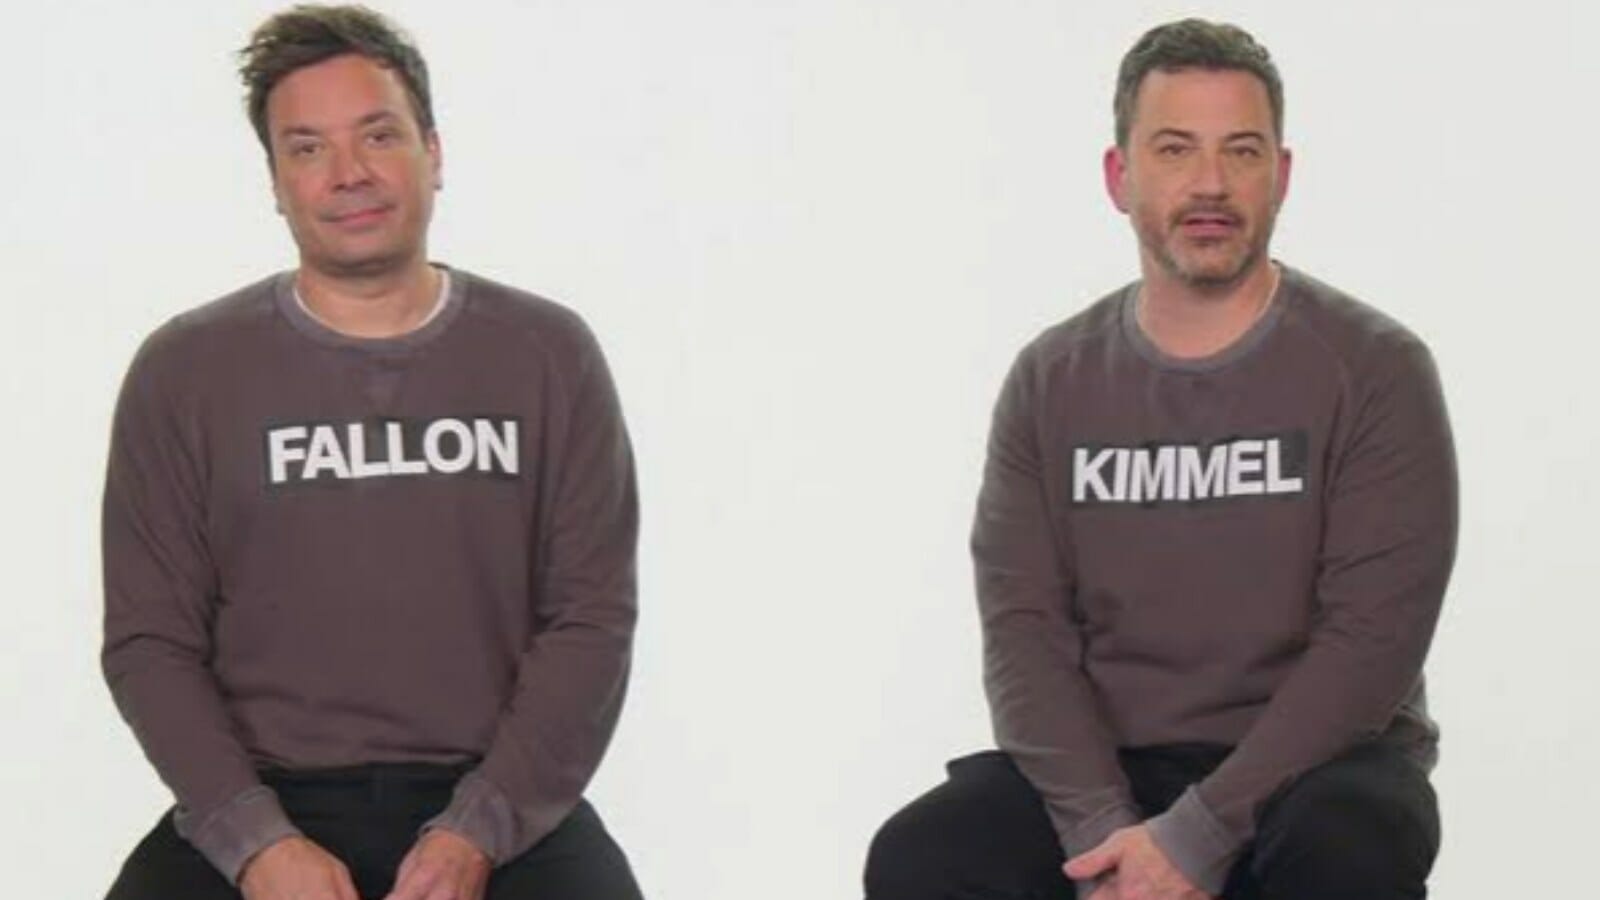 Jimmy Fallon and Jimmy Kimmel